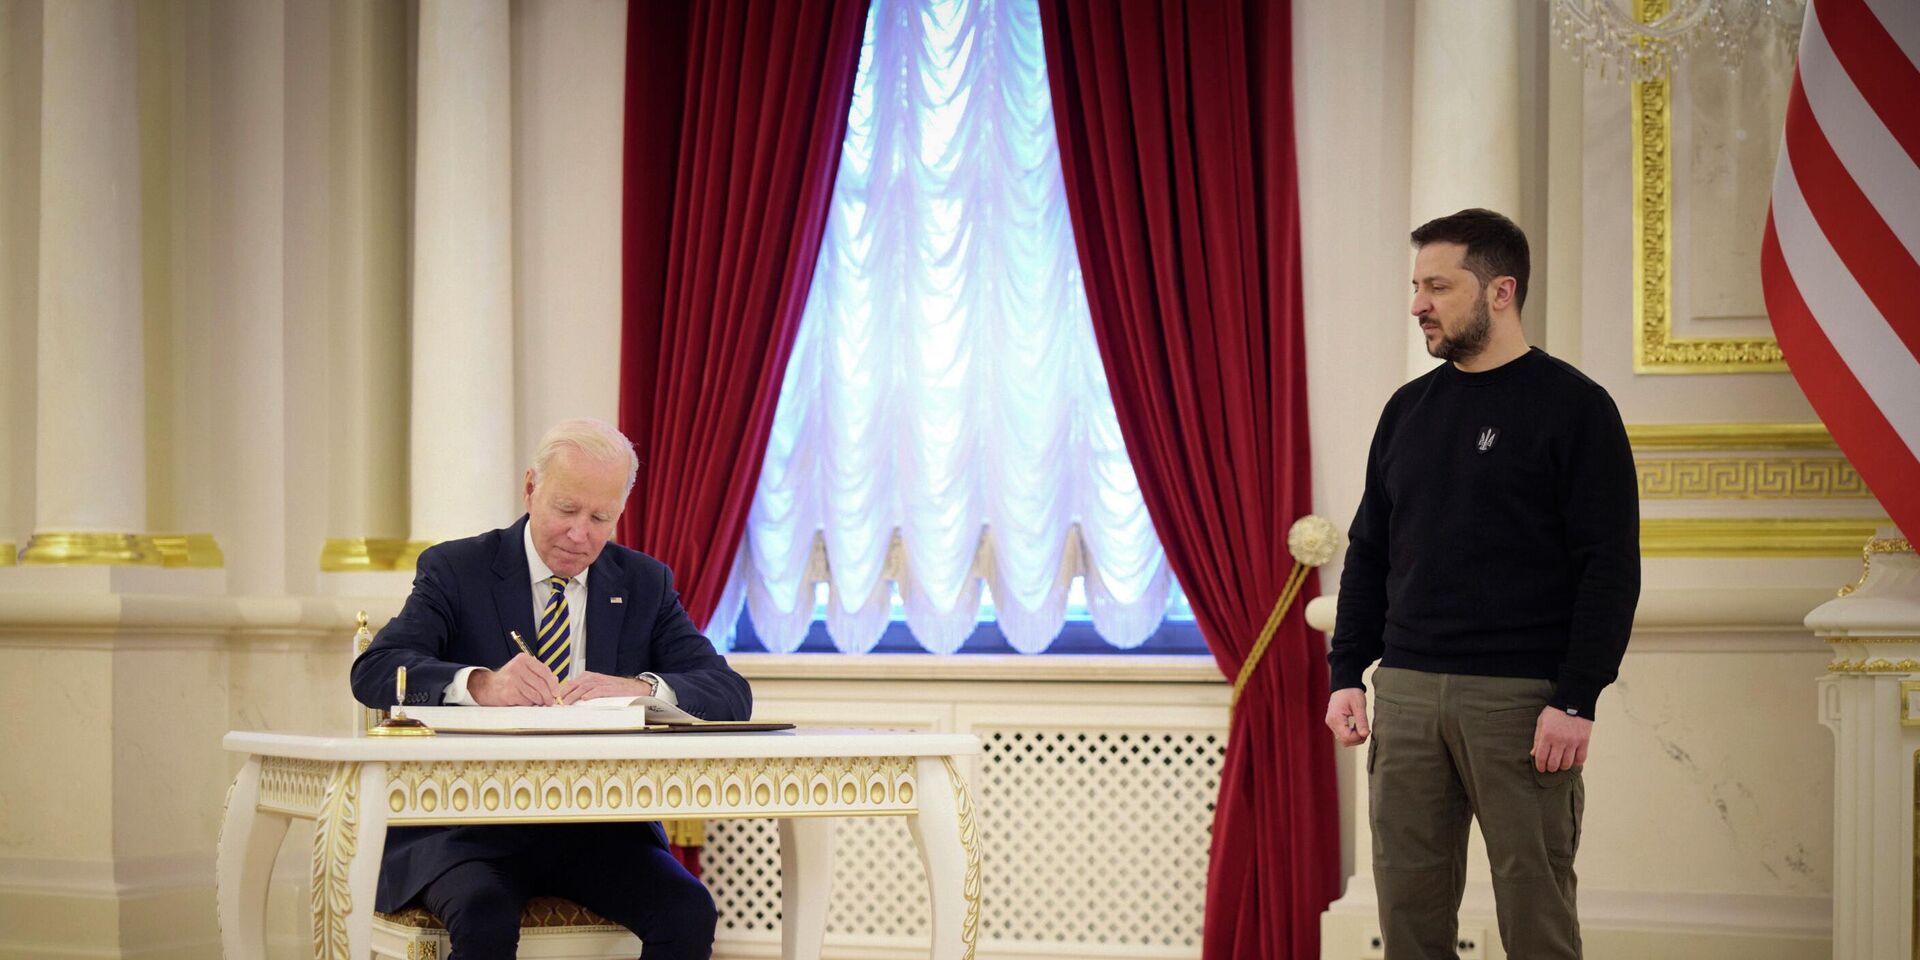 Президент США Джо Байден и президент Украины Владимир Зеленский в Киеве, Украина. 20 февраля 2023 года - ИноСМИ, 1920, 22.03.2023